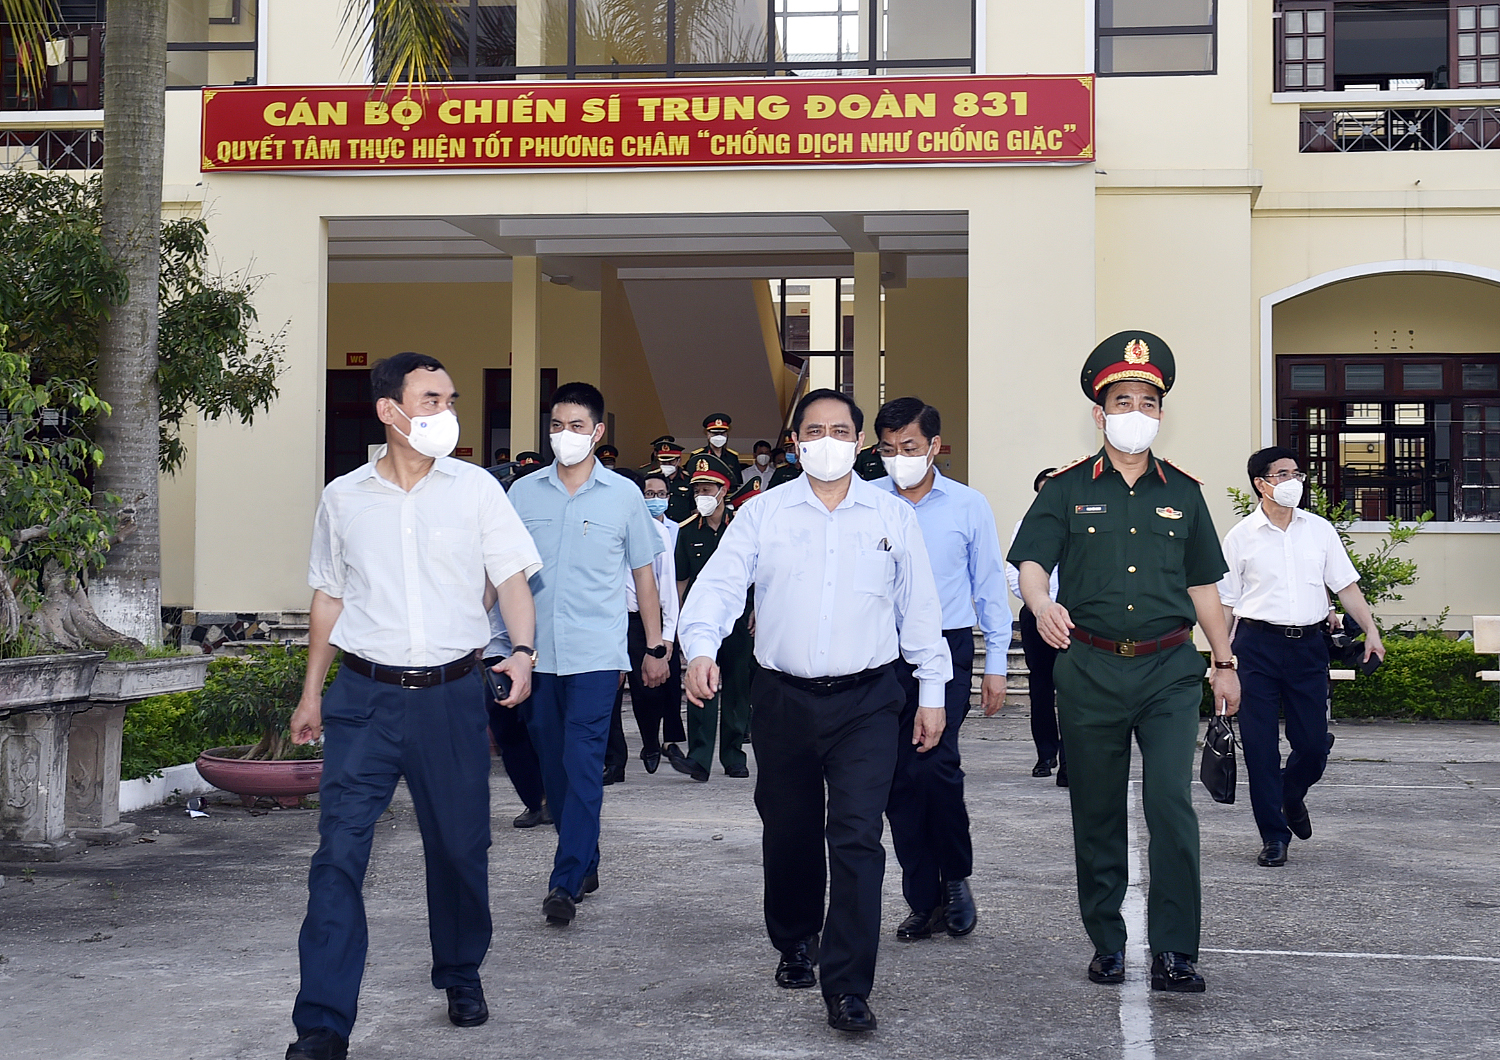 Thủ tướng và đoàn công tác đã tới thăm, động viên cán bộ, chiến sĩ và các lực lượng đang làm nhiệm vụ tại Trung đoàn 831 - Bộ Chỉ huy quân sự tỉnh Bắc Giang.